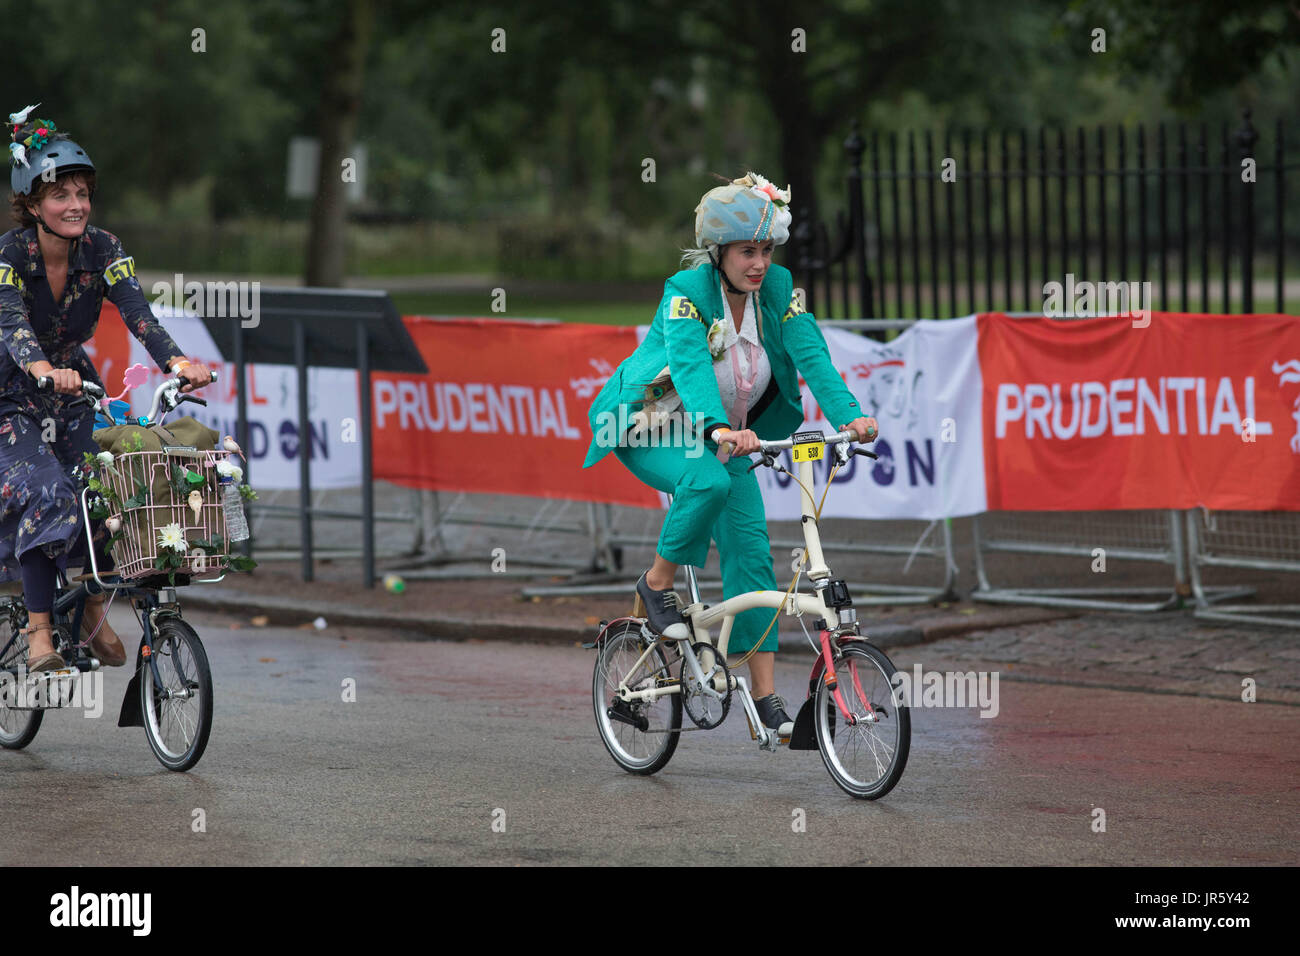 3 juin 2017 Le centre commercial London UK le début de la course du championnat du monde de Brompton race autour du parc une femme tous les habiller sur son vélo Banque D'Images